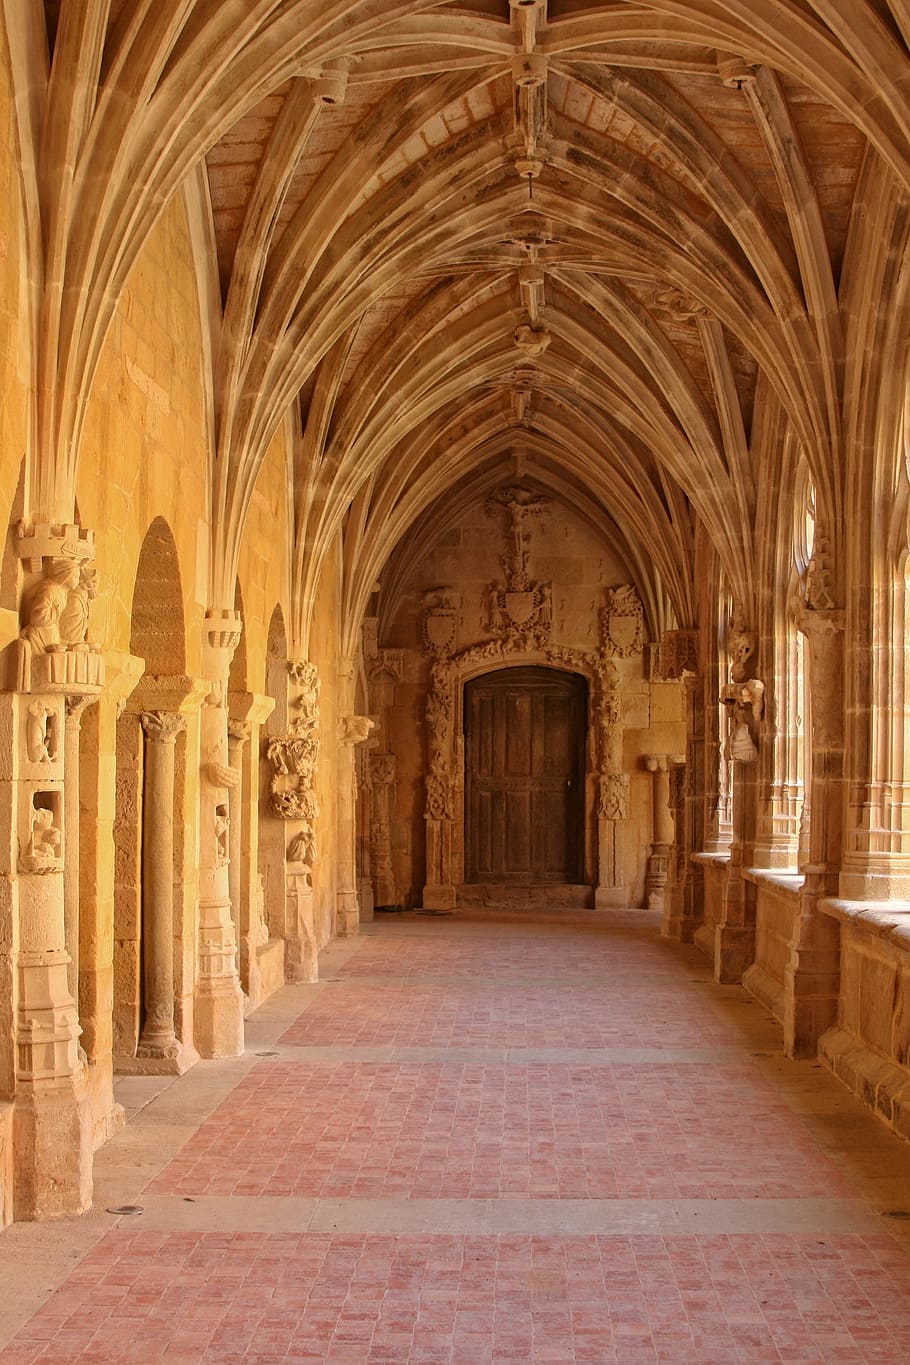 France, Dordogne, Périgord, cloister cadouin, church, sculpture, architecture, arch, architectural Column, famous Place